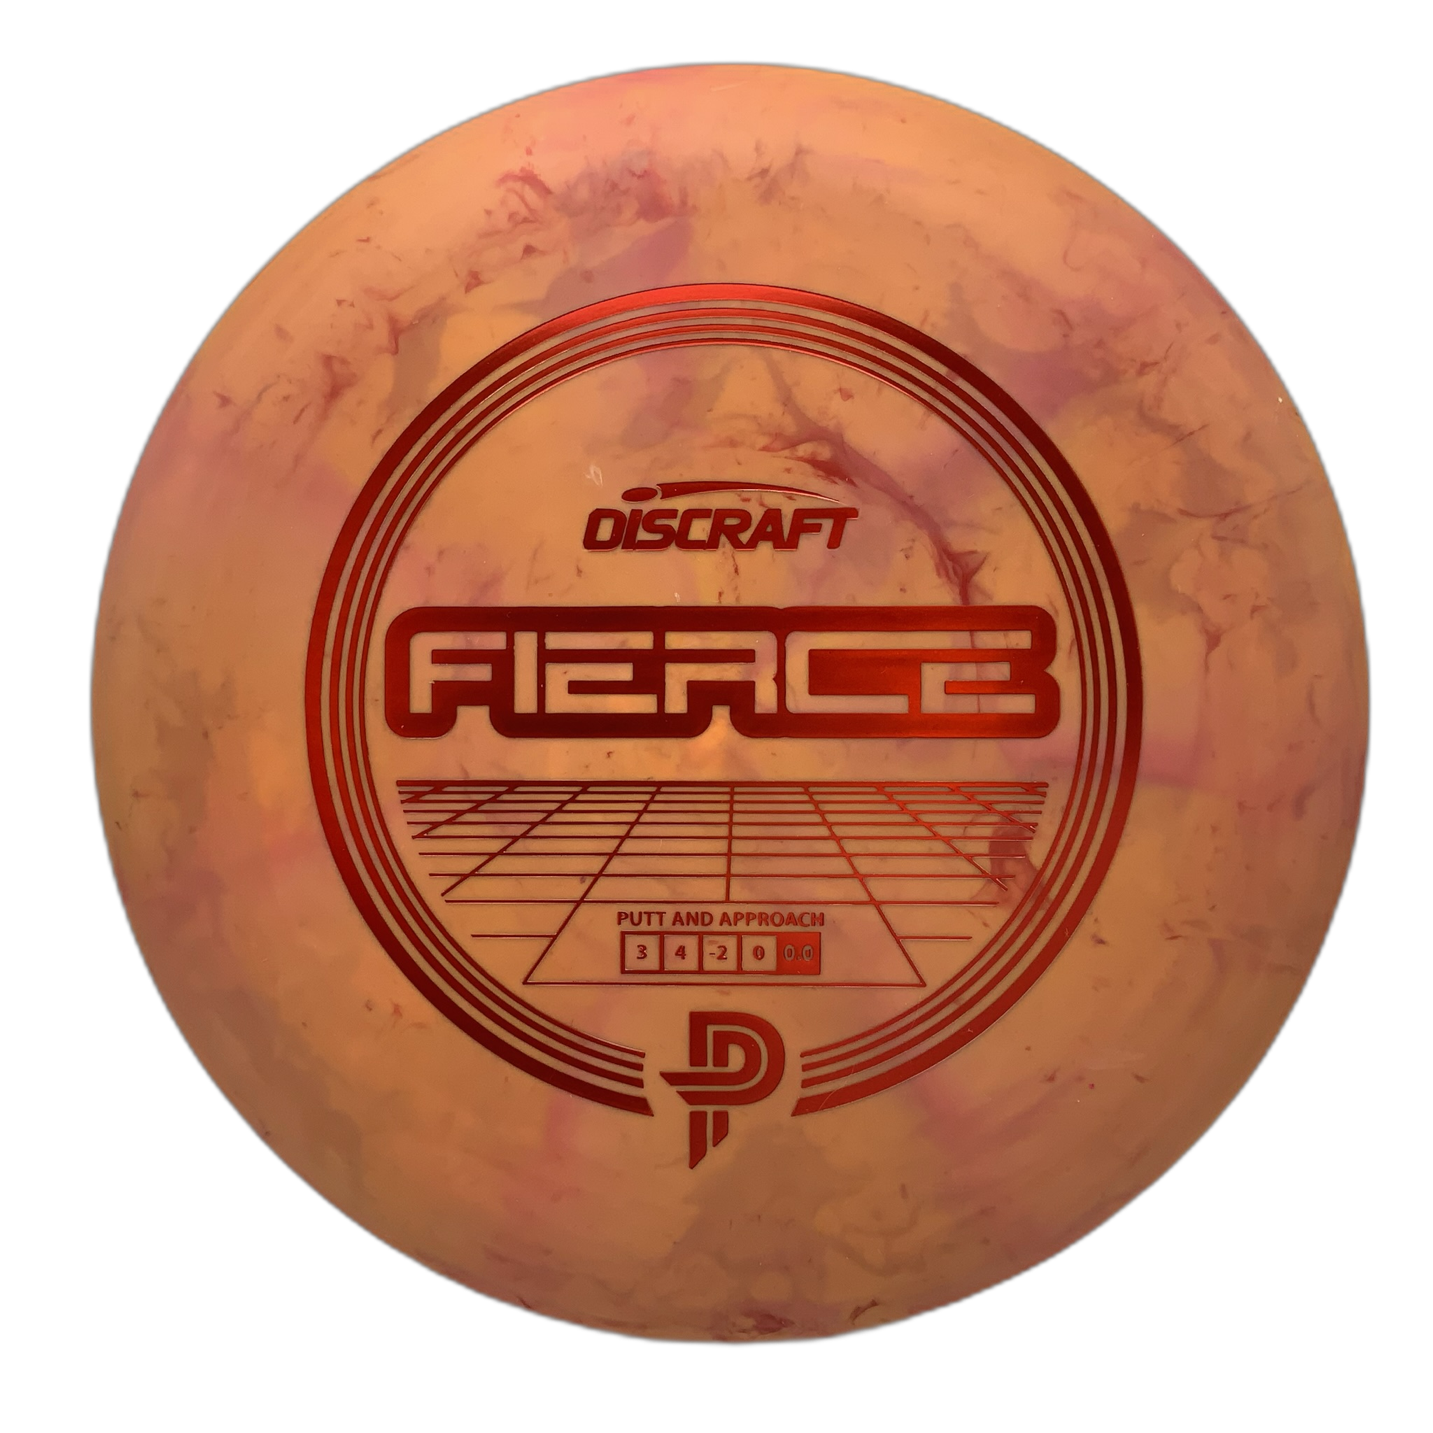 Discraft Fierce - Astro Discs TX - Houston Disc Golf